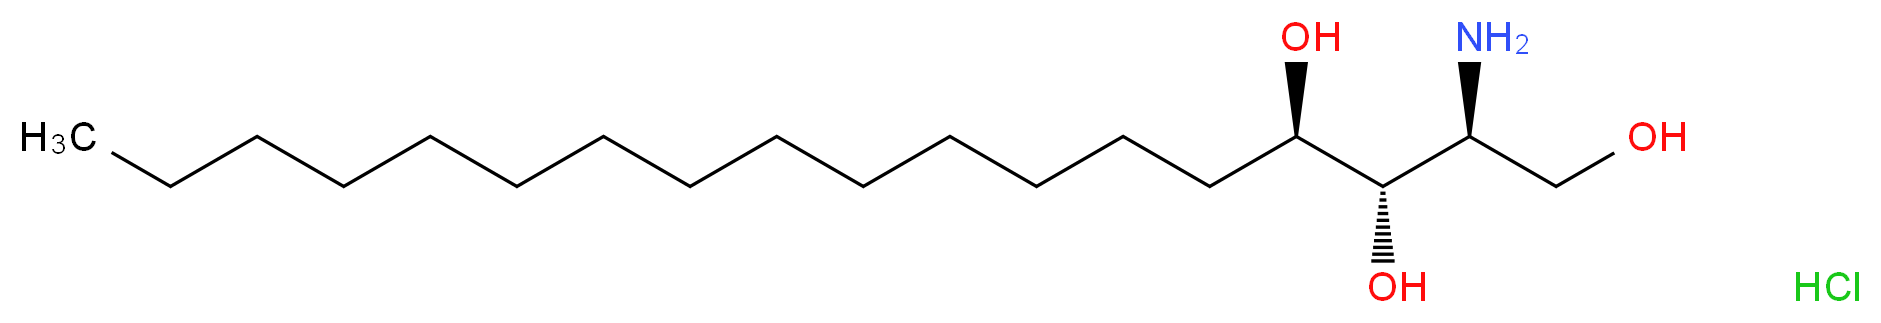 (2S,3S,4R)-2-aminooctadecane-1,3,4-triol hydrochloride_分子结构_CAS_554-62-1